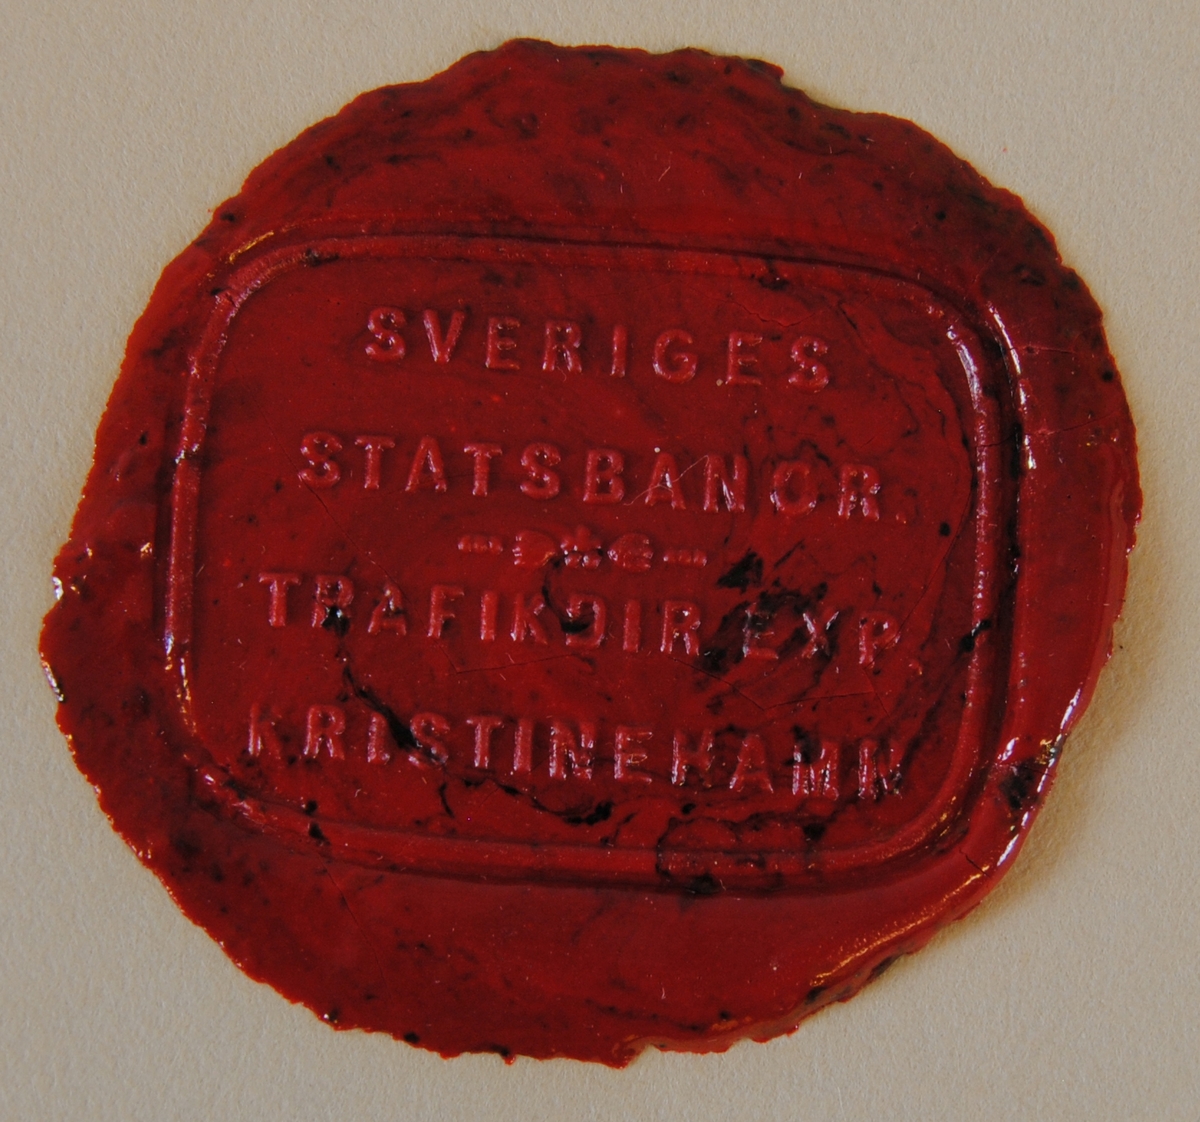 Rektangulärt sigillavtryck med rundade hörn i rött lack på gultonat papper. Texten löper över fyra rader och i mitten finns ett litet blomsterornament.